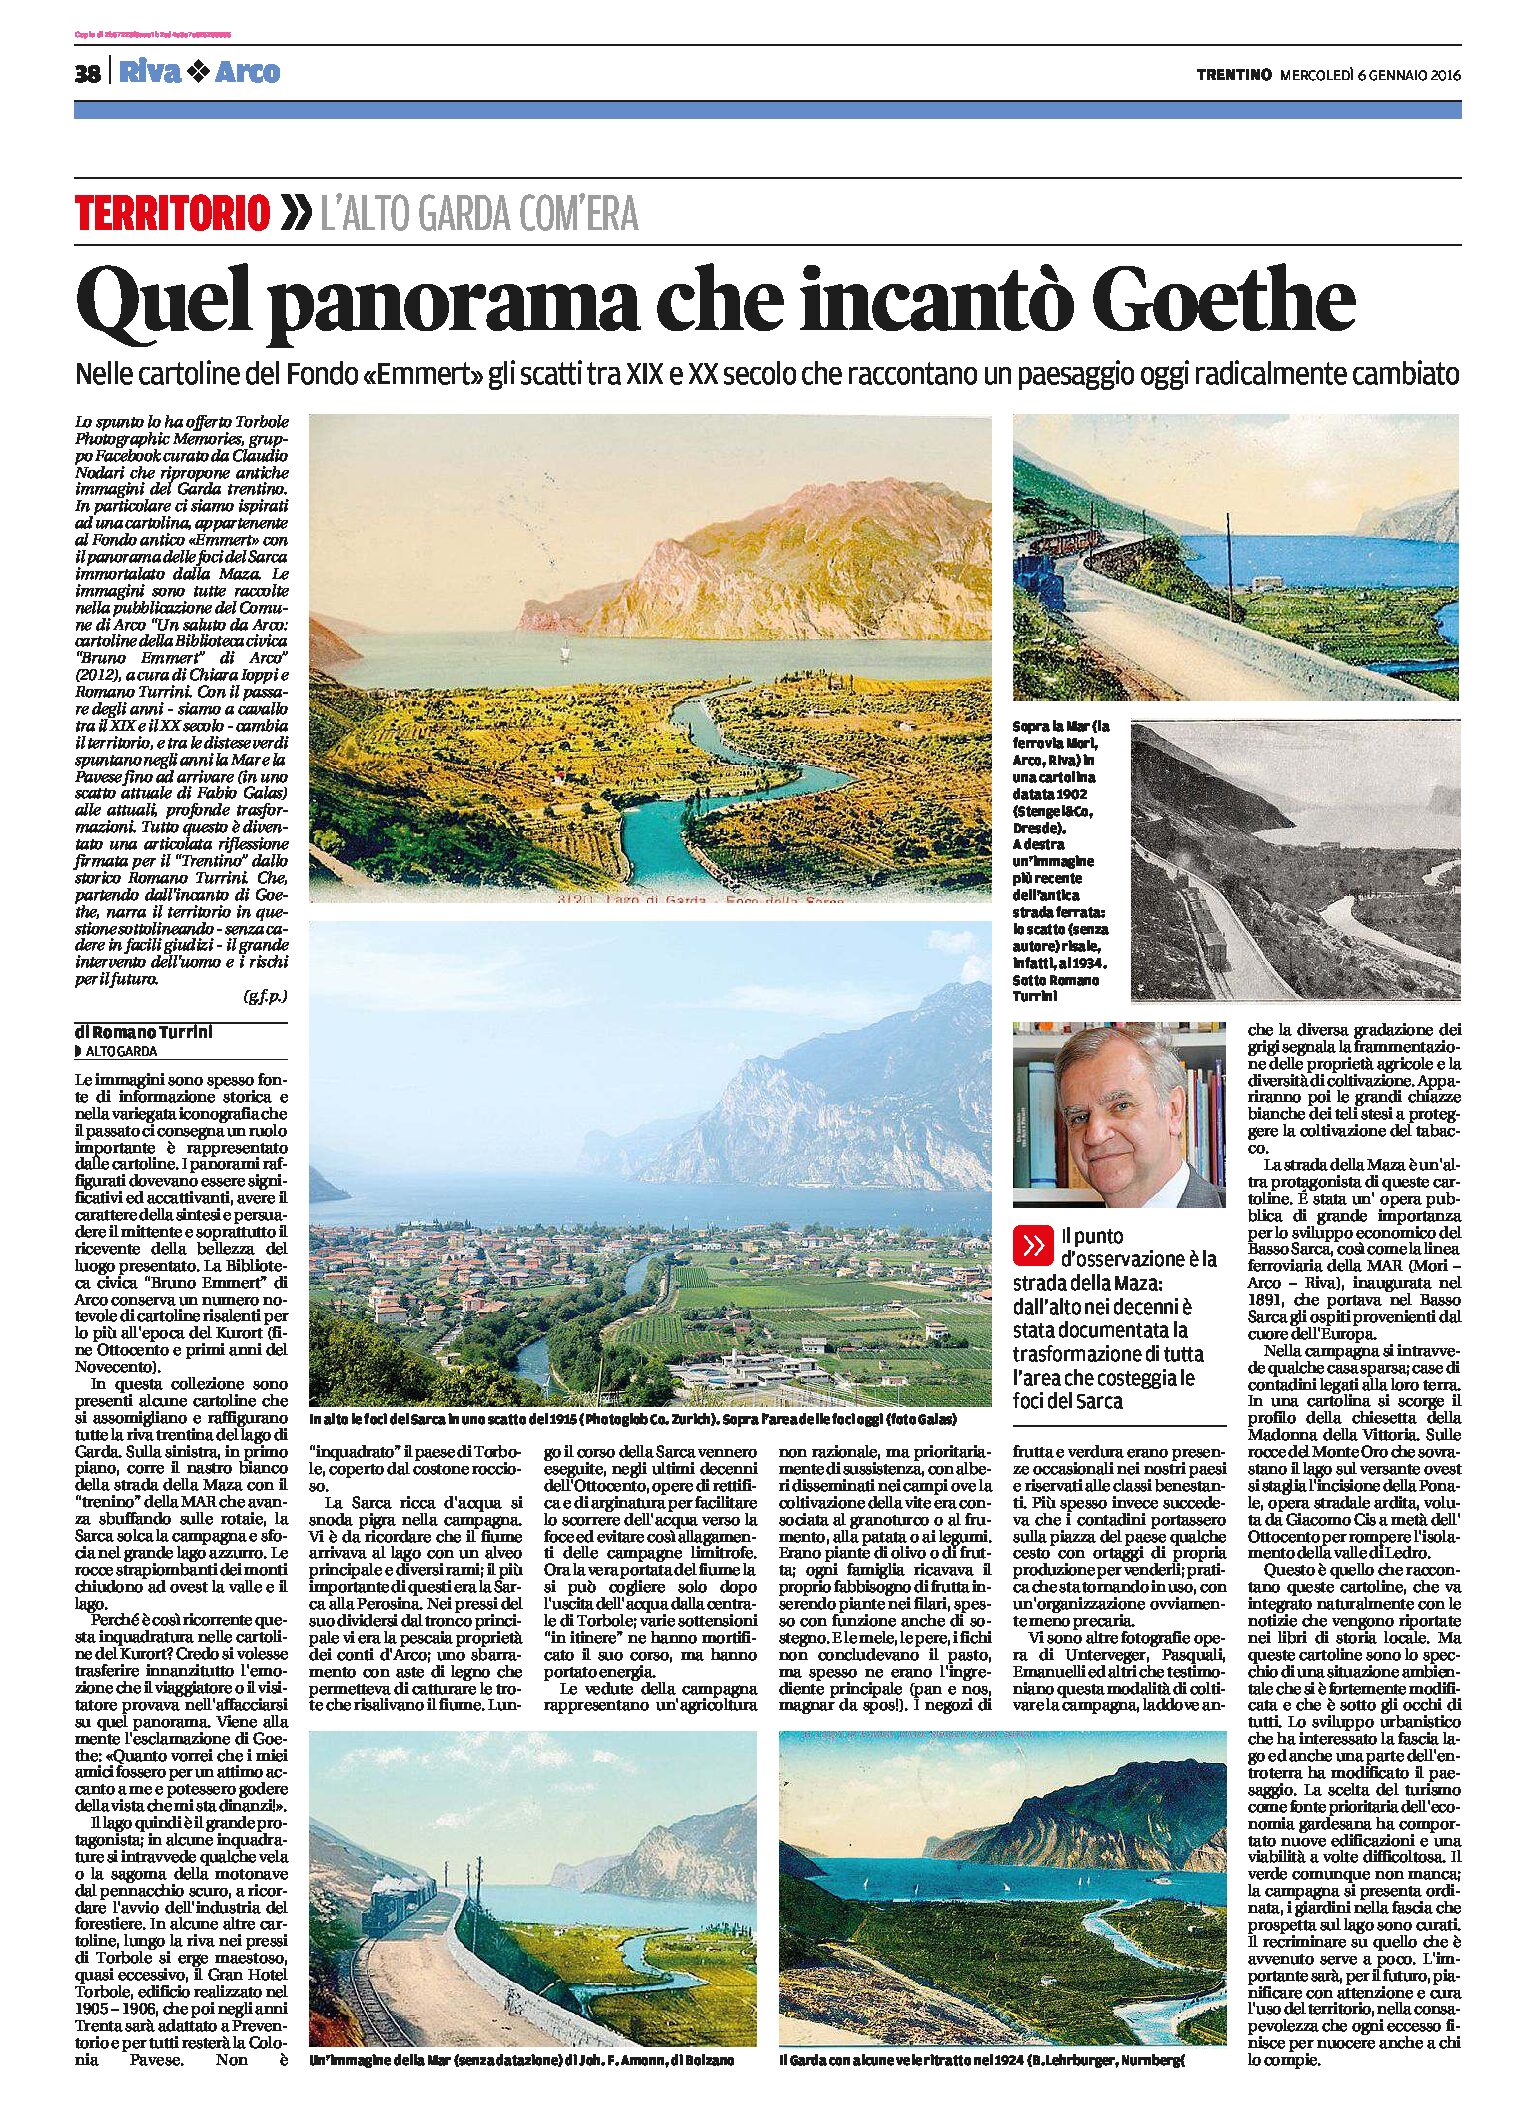 Alto Garda, paesaggi: foto di panorami antichi nelle cartoline della biblioteca “Emmert” ad Arco